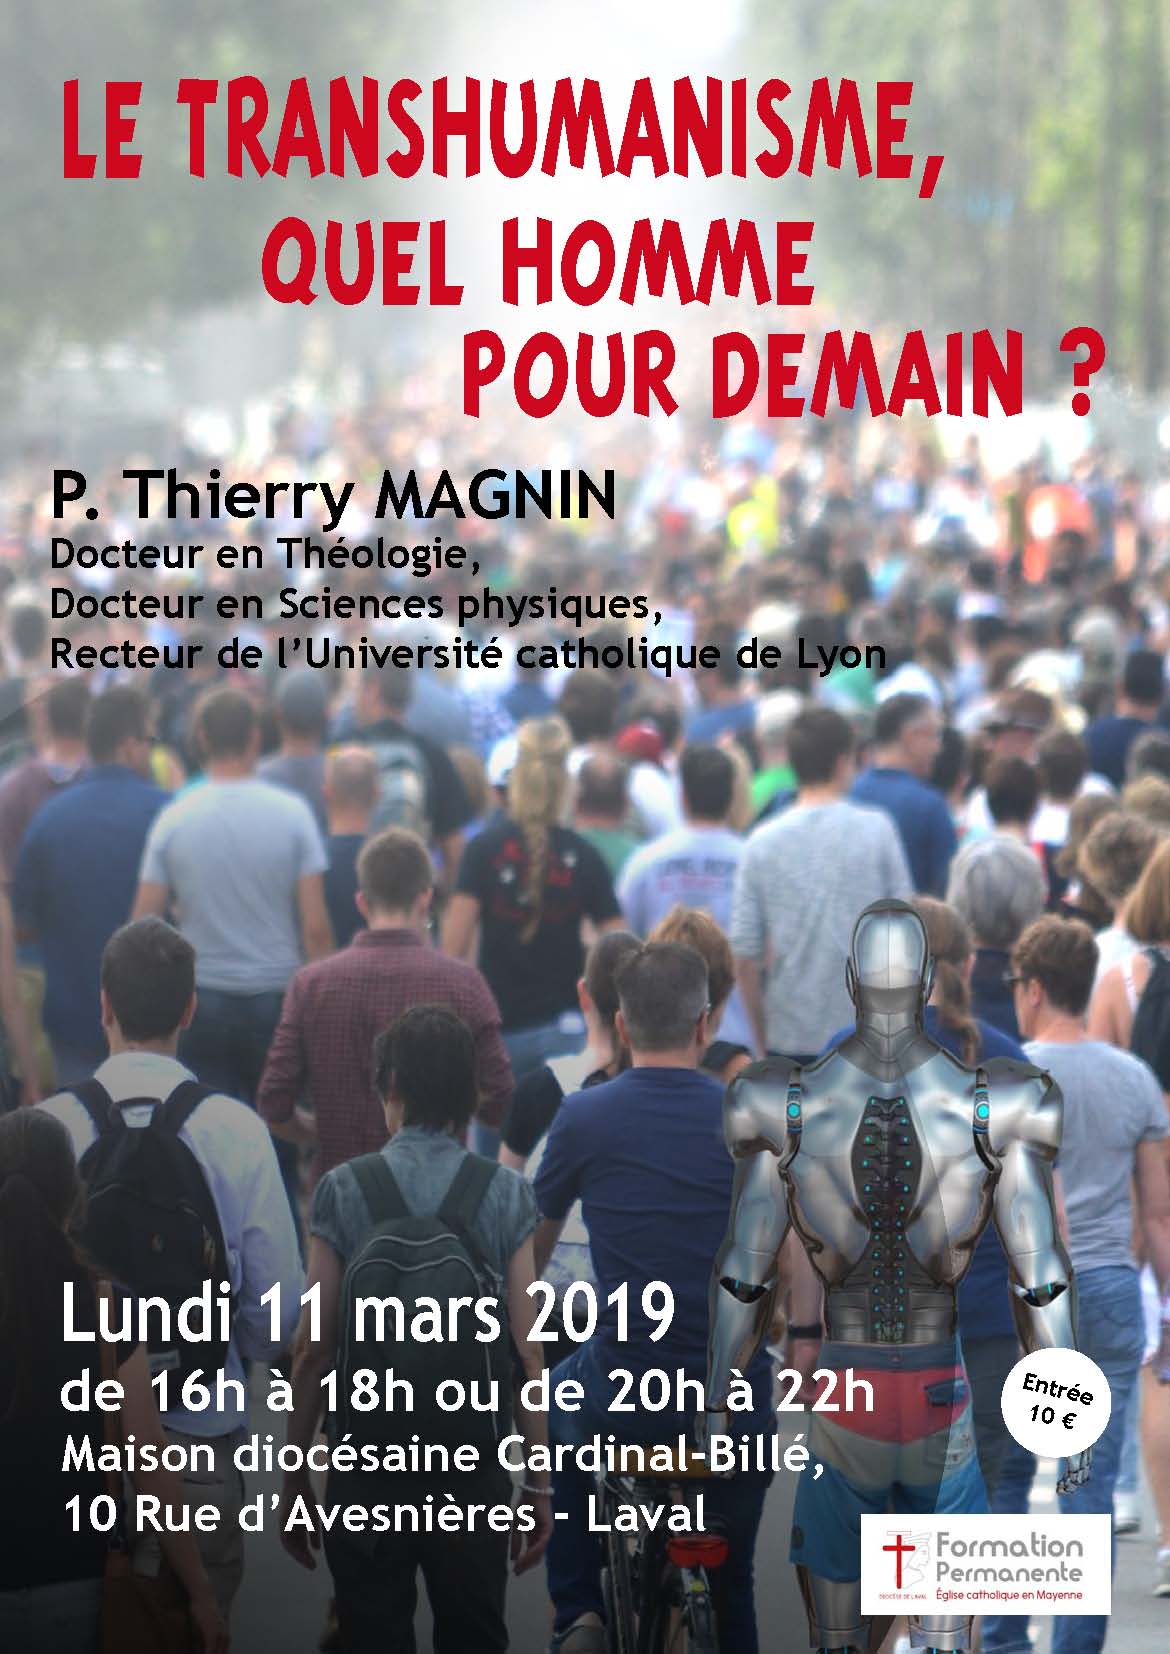 Transhumanisme, quel homme pour demain ? Conférence le 11 mars 2019 à Laval (53)